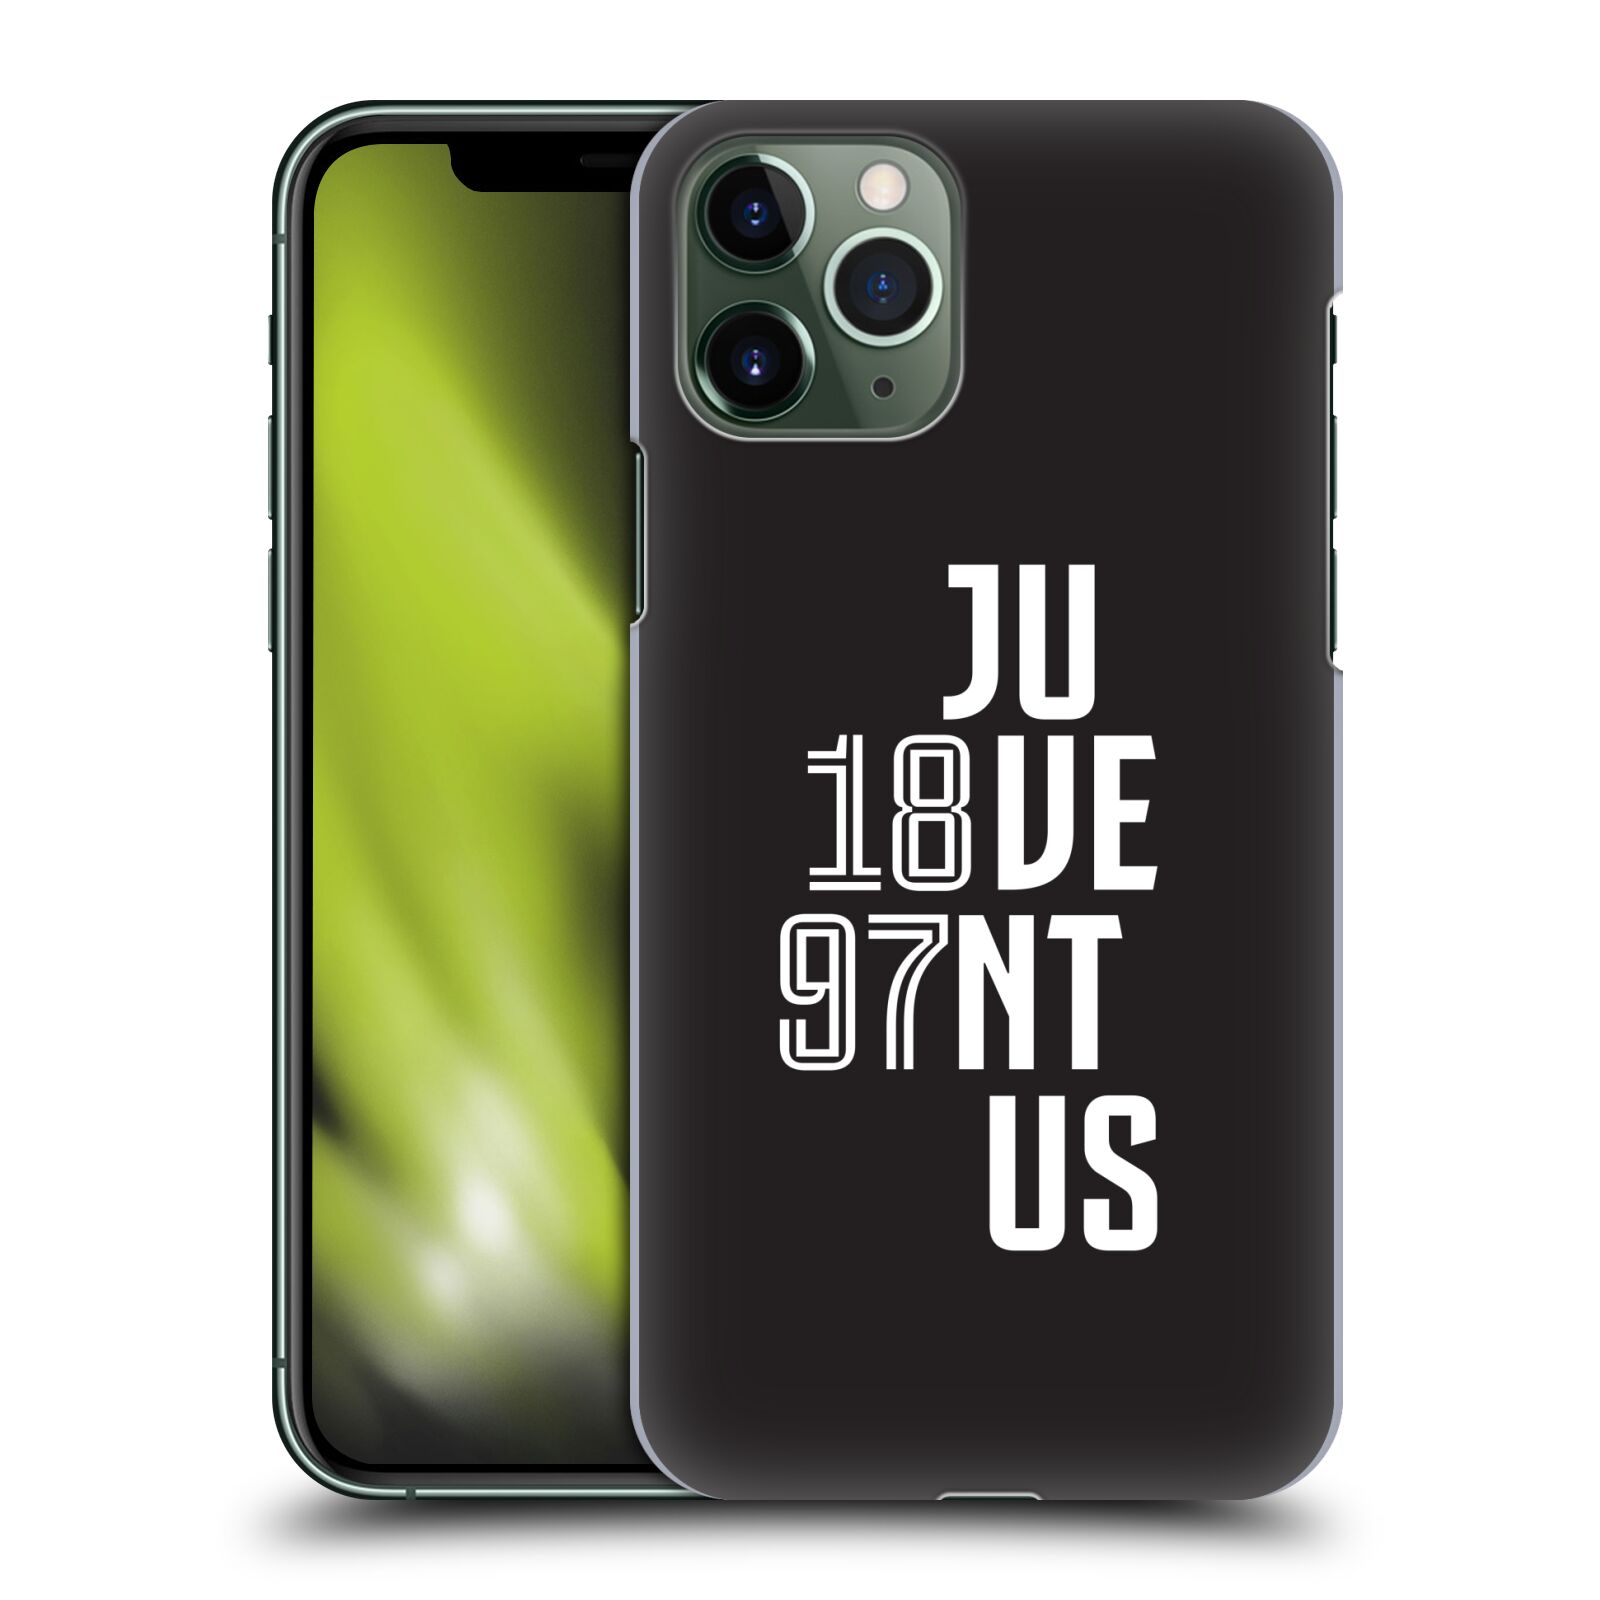 Zadní obal pro mobil Apple Iphone 11 PRO - HEAD CASE - Fotbalový klub Juventus - Velké písmo